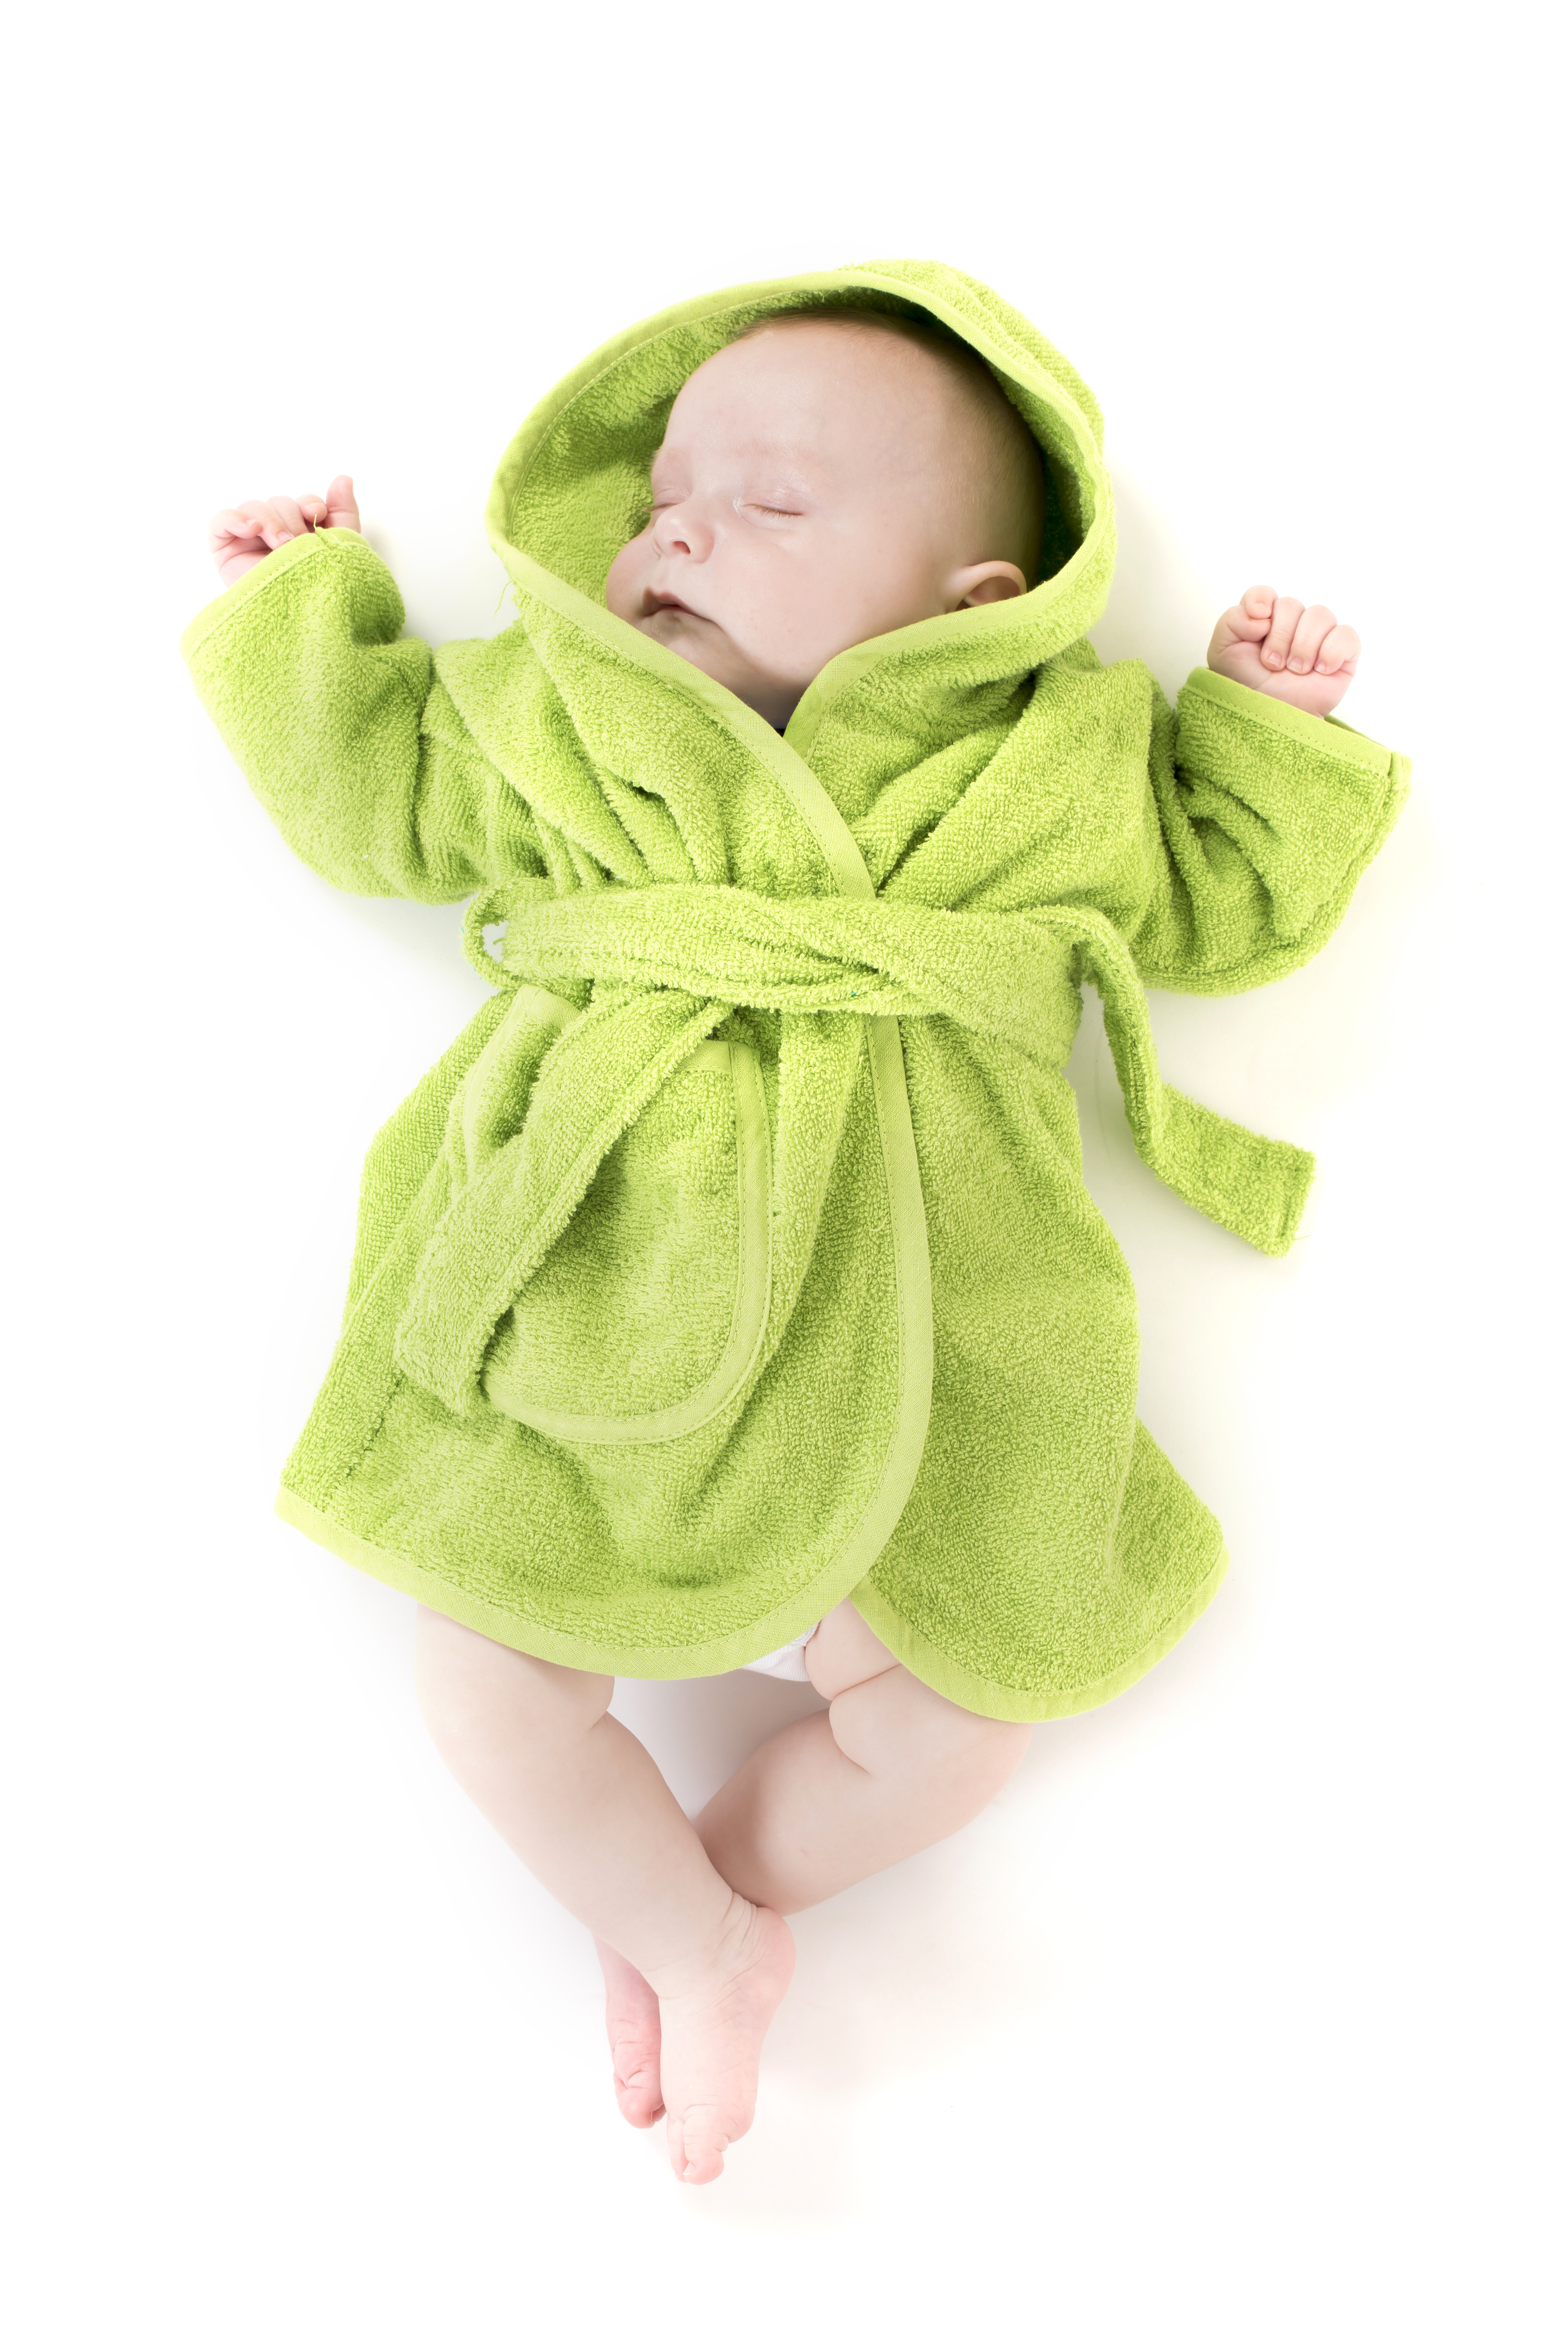 Baby badjas uni - 0-12 maanden, groen